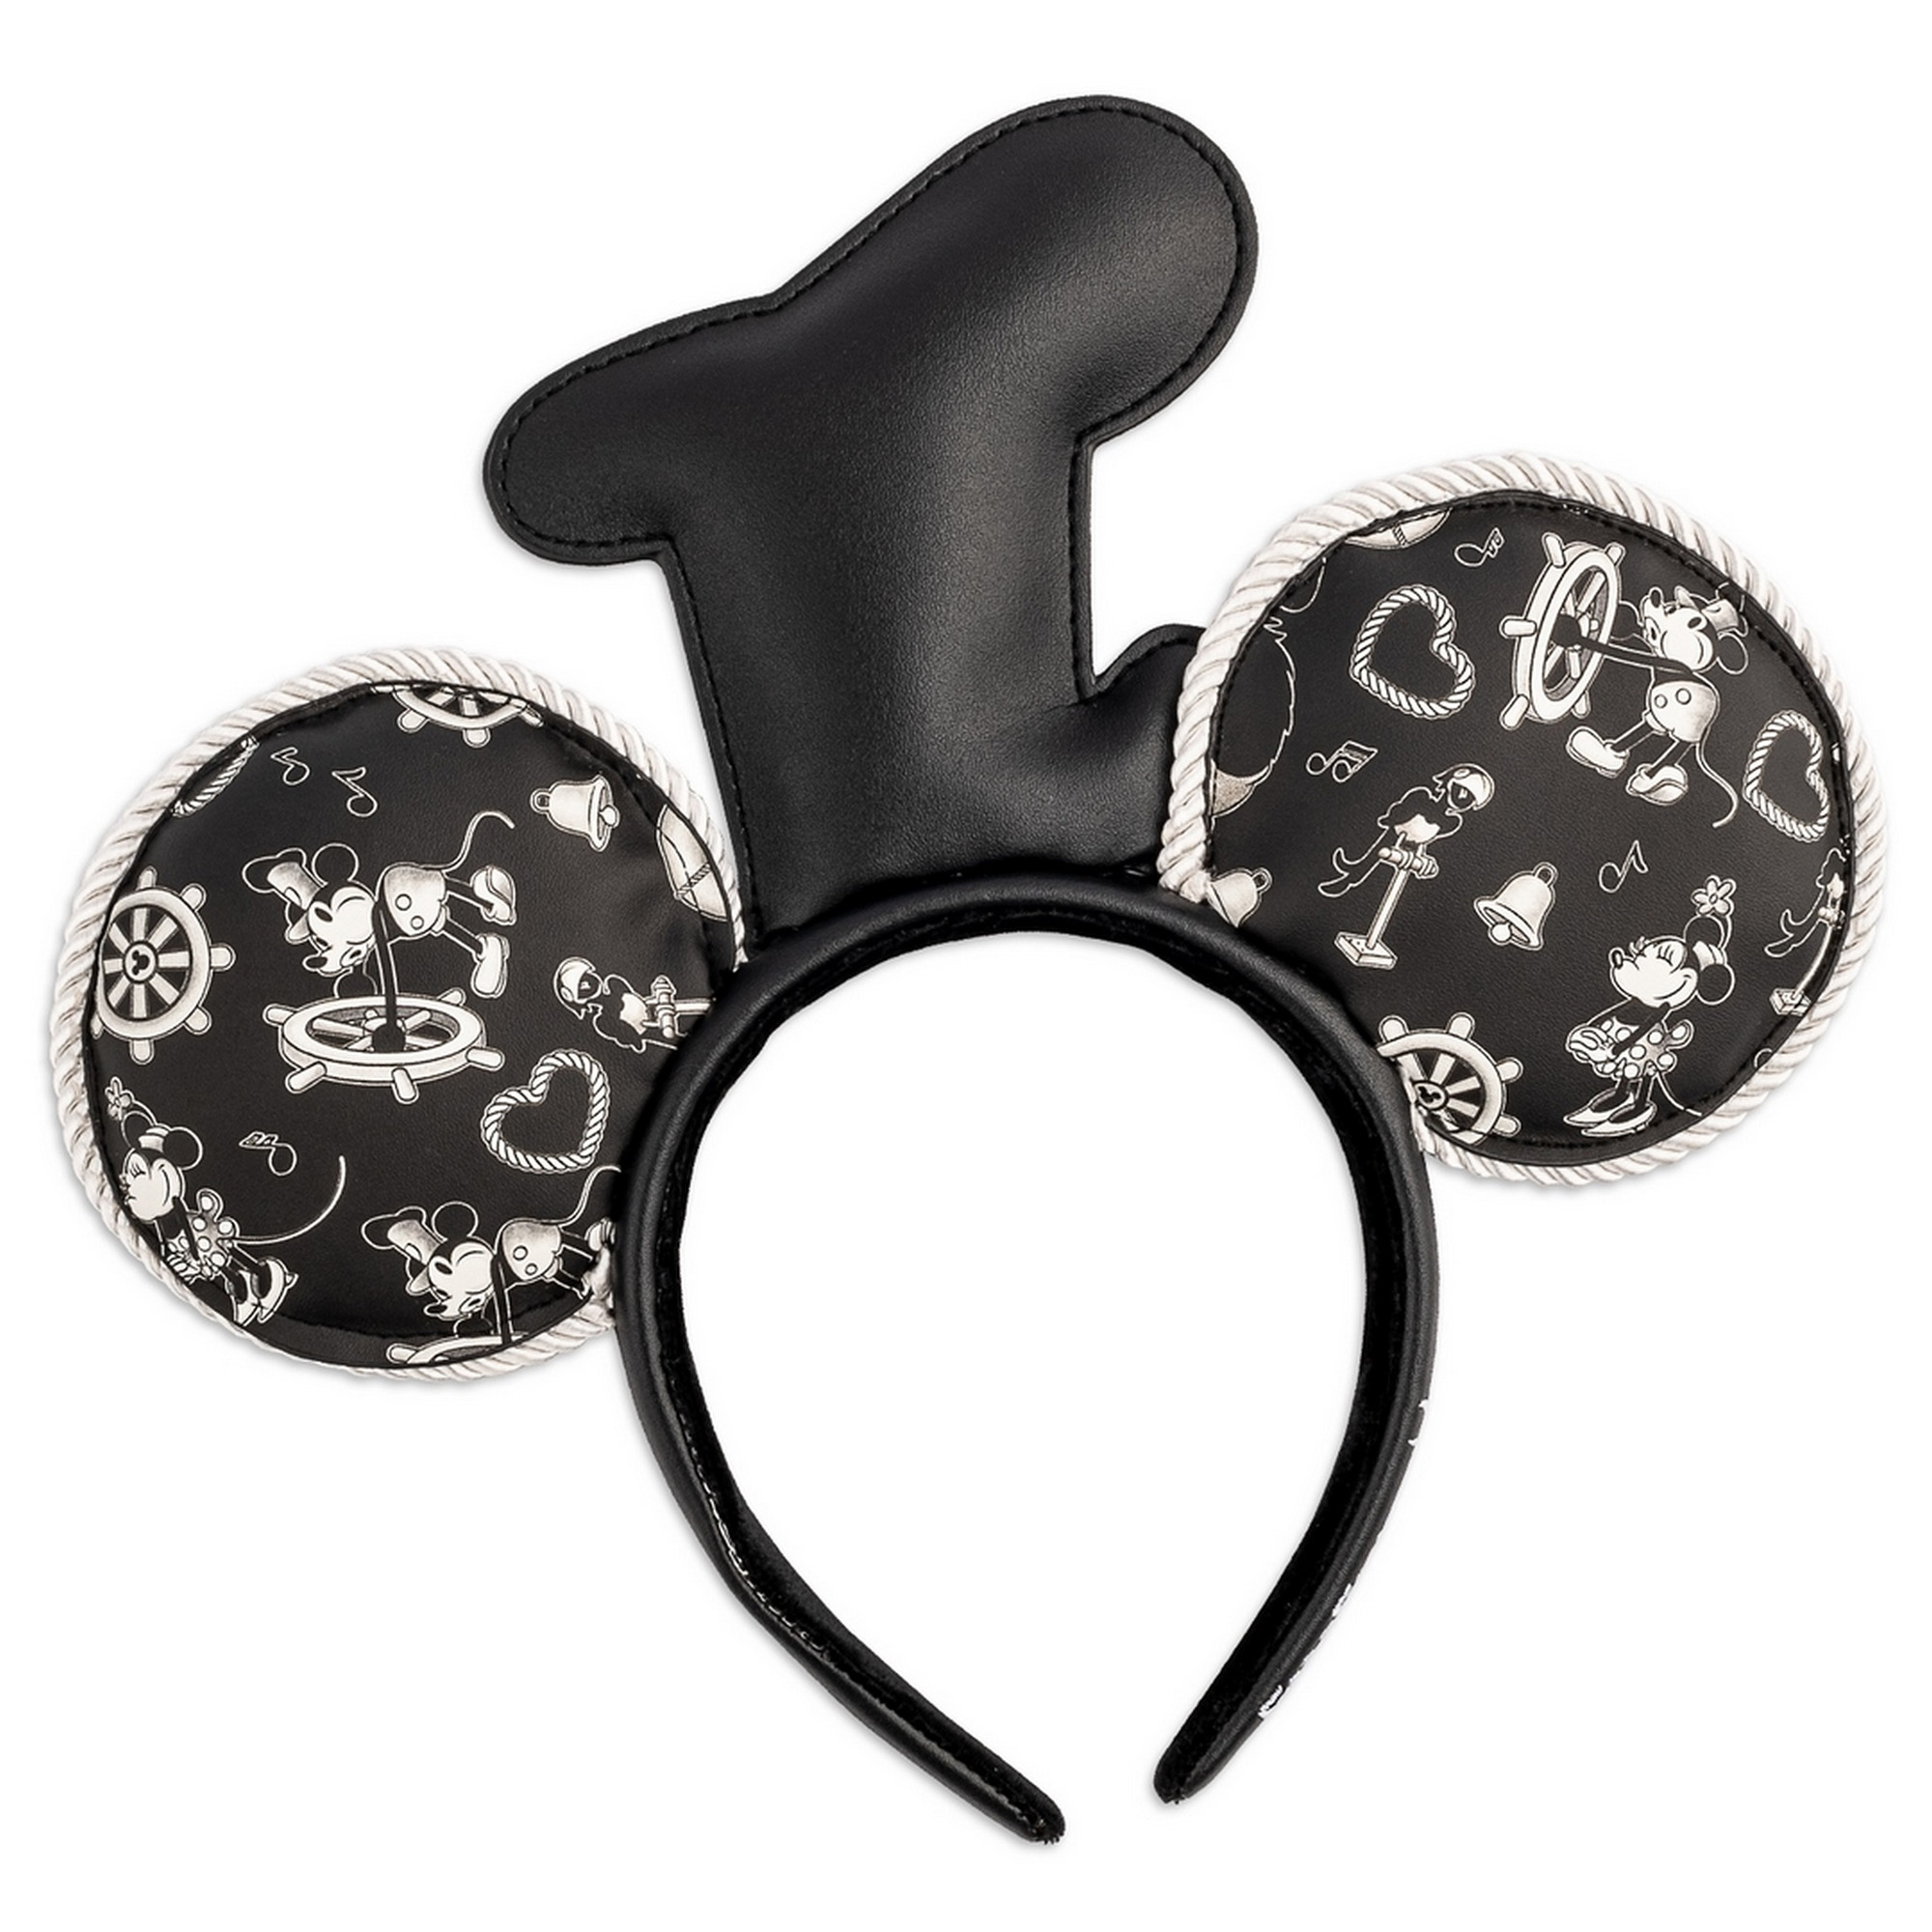 Cerchietto con orecchie di Topolino Steamboat Willie - Disney